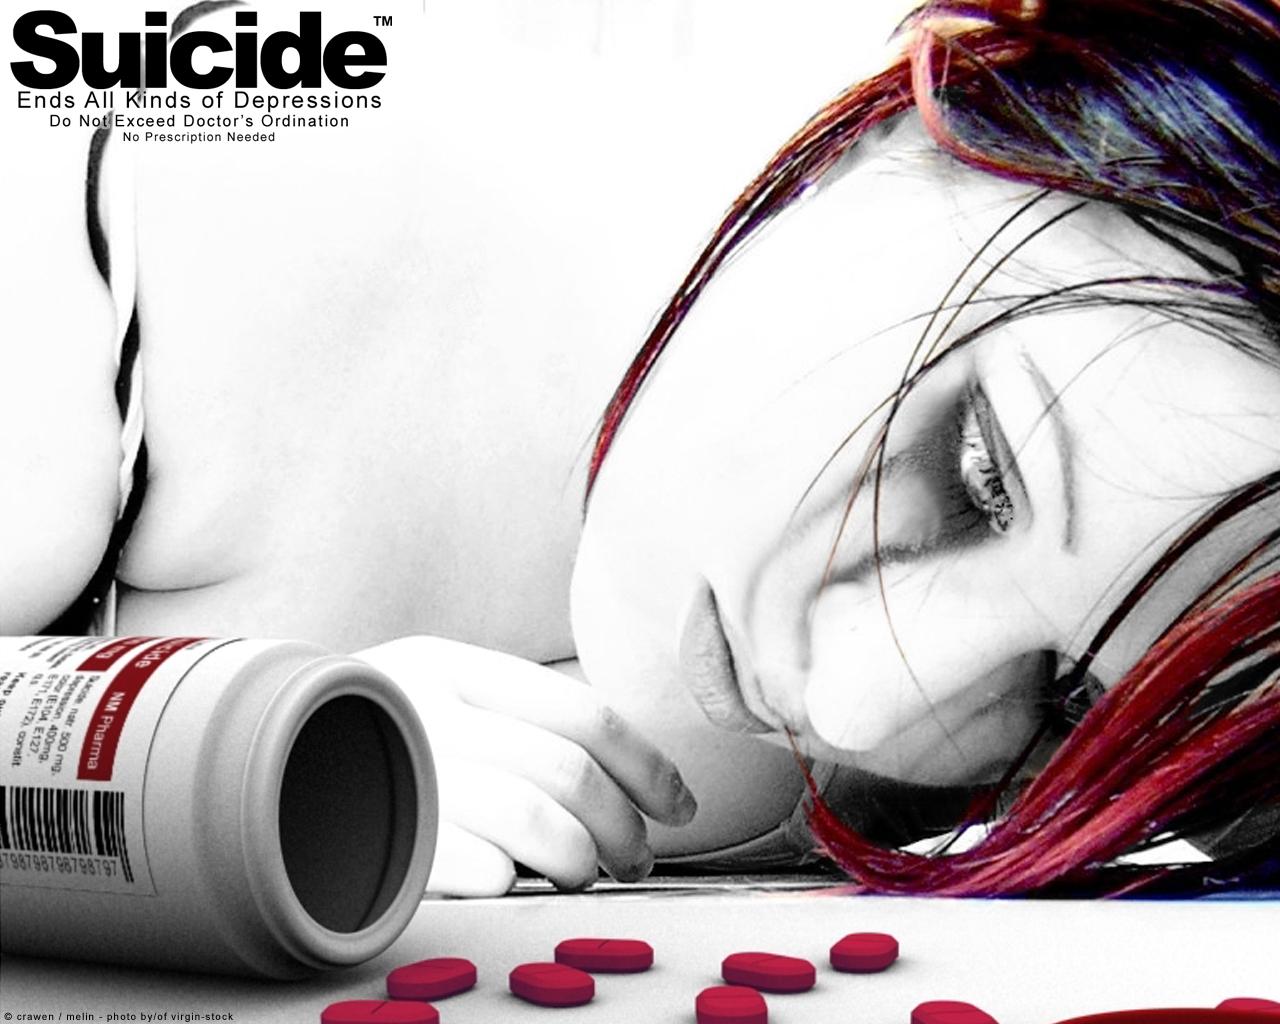 انتحار &suicide  106070869